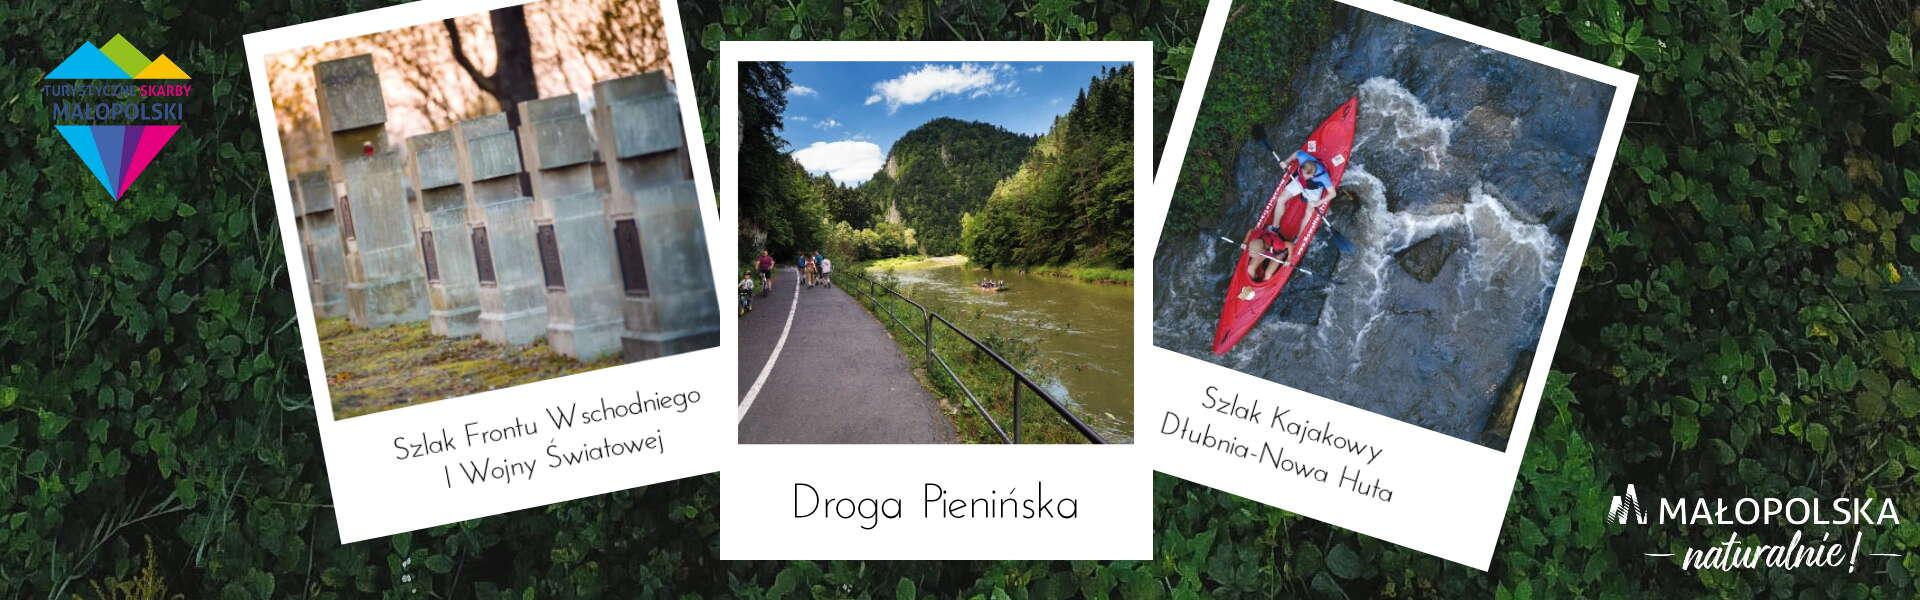 Grafika zawierająca trzy zdjęcia: cmentarz wojenny na Szlaku Frontu Wschodniego I Wojny Światowej, Drogę Pienińską w przełomie Dunajca i kajak na Szlaku Kajakowym Dłubnia-Nowa Huta.